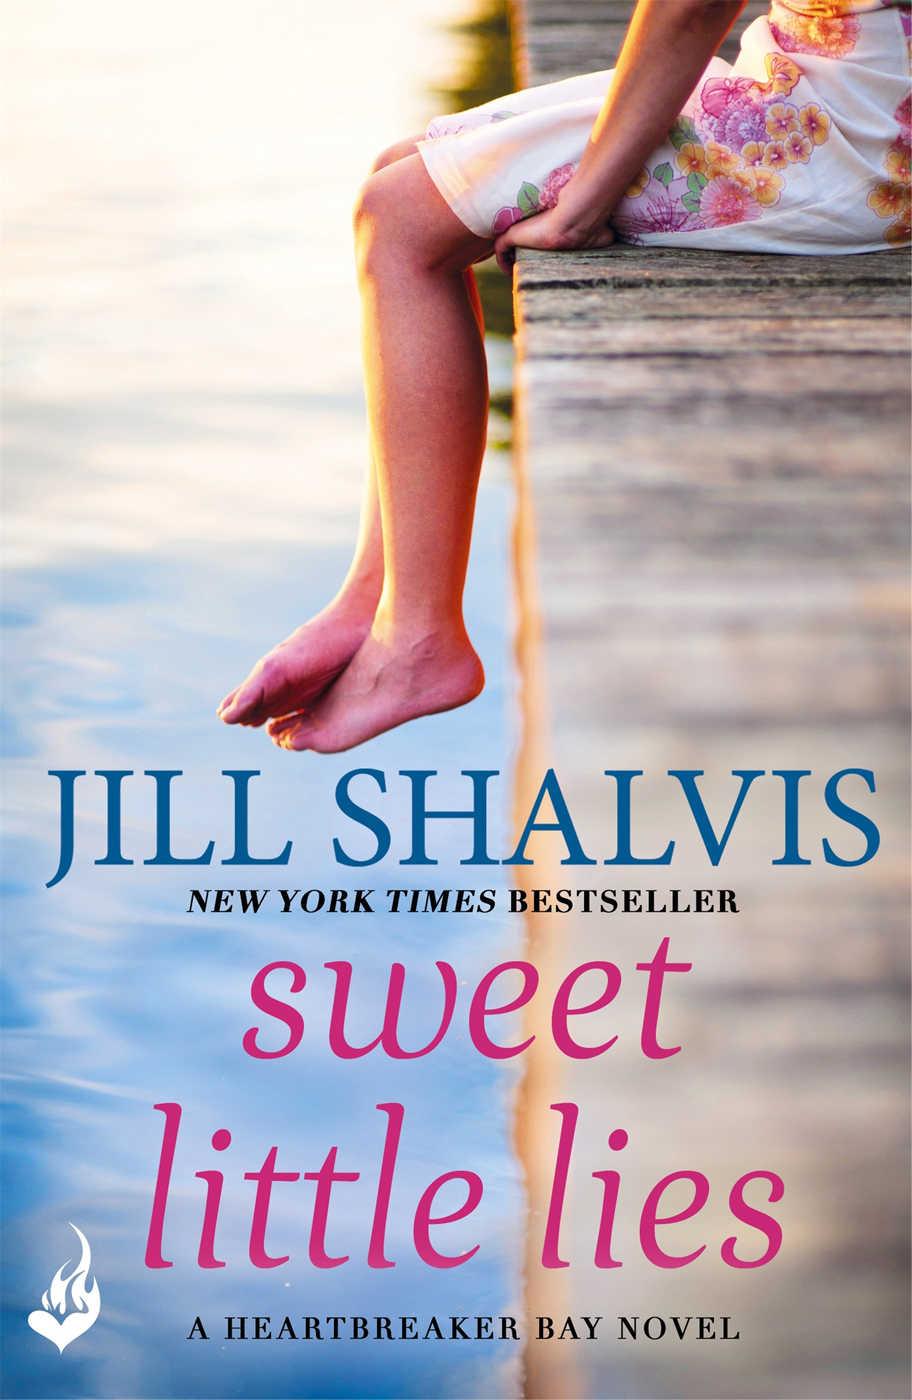 Sweet Little Lies: Heartbreaker Bay Book 1 by Jill Shalvis